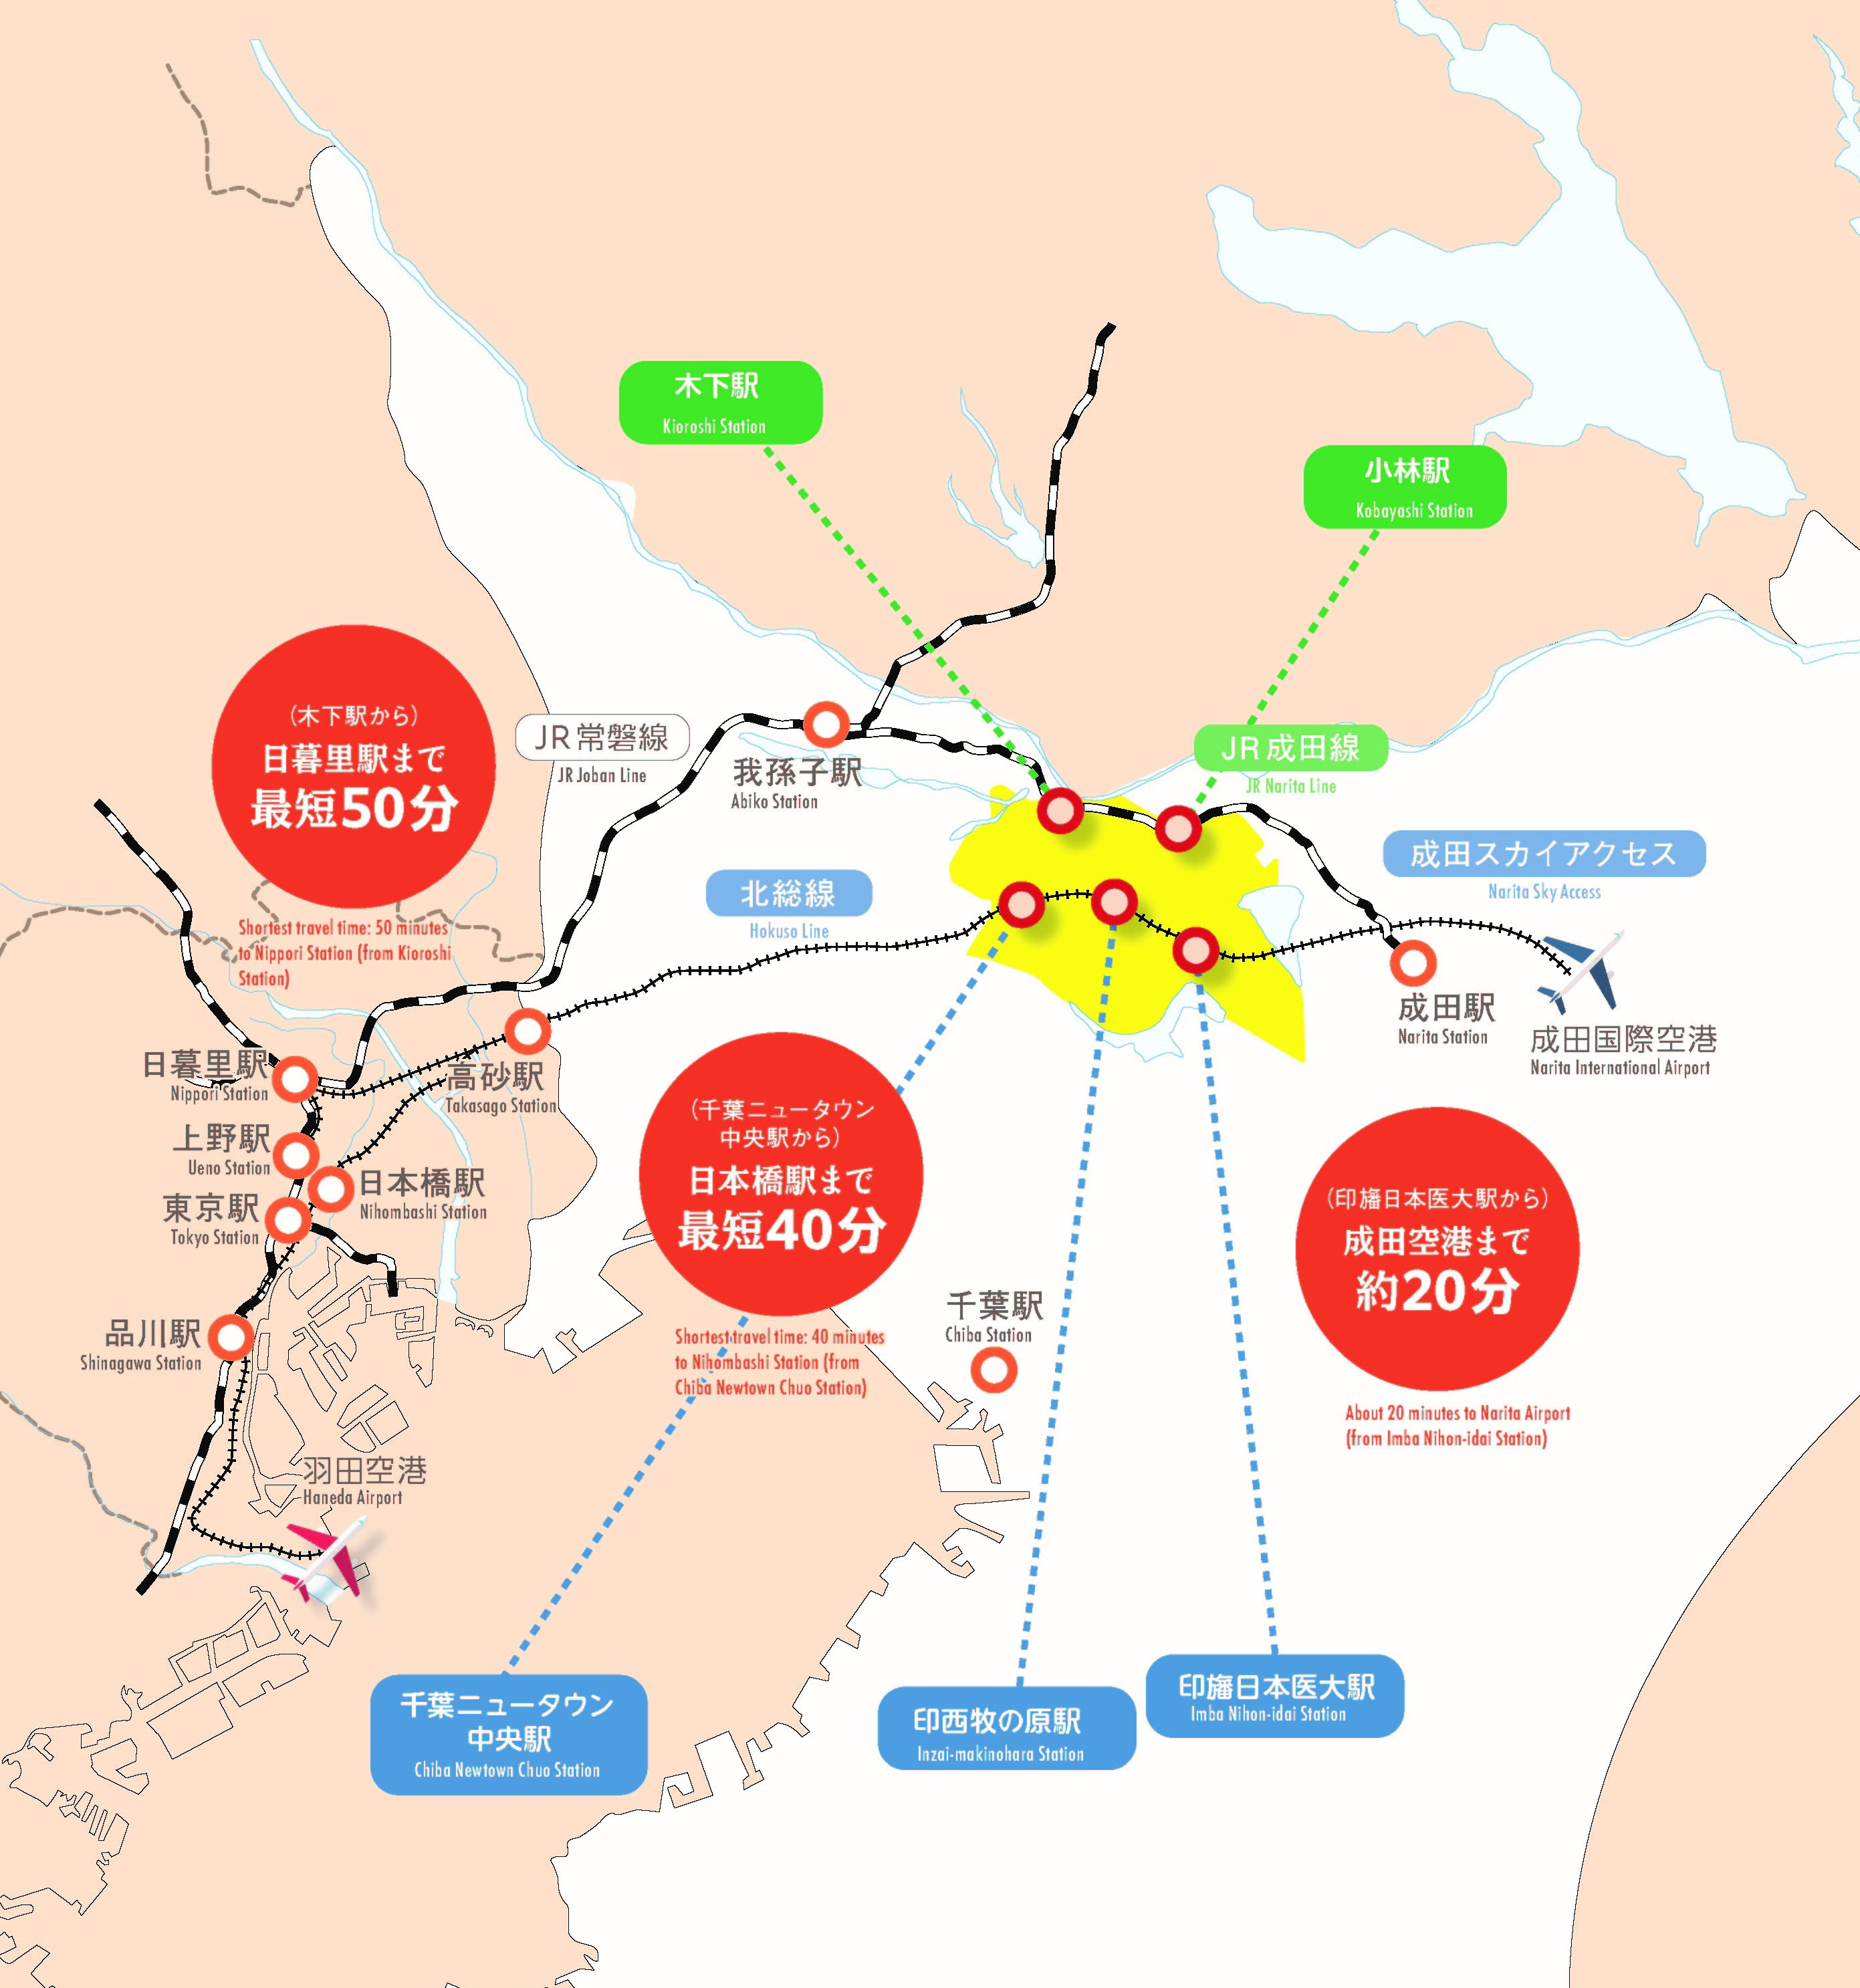 印西市の位置を首都圏40キロメートル、成田空港から約15キロメートル圏内としめした地図